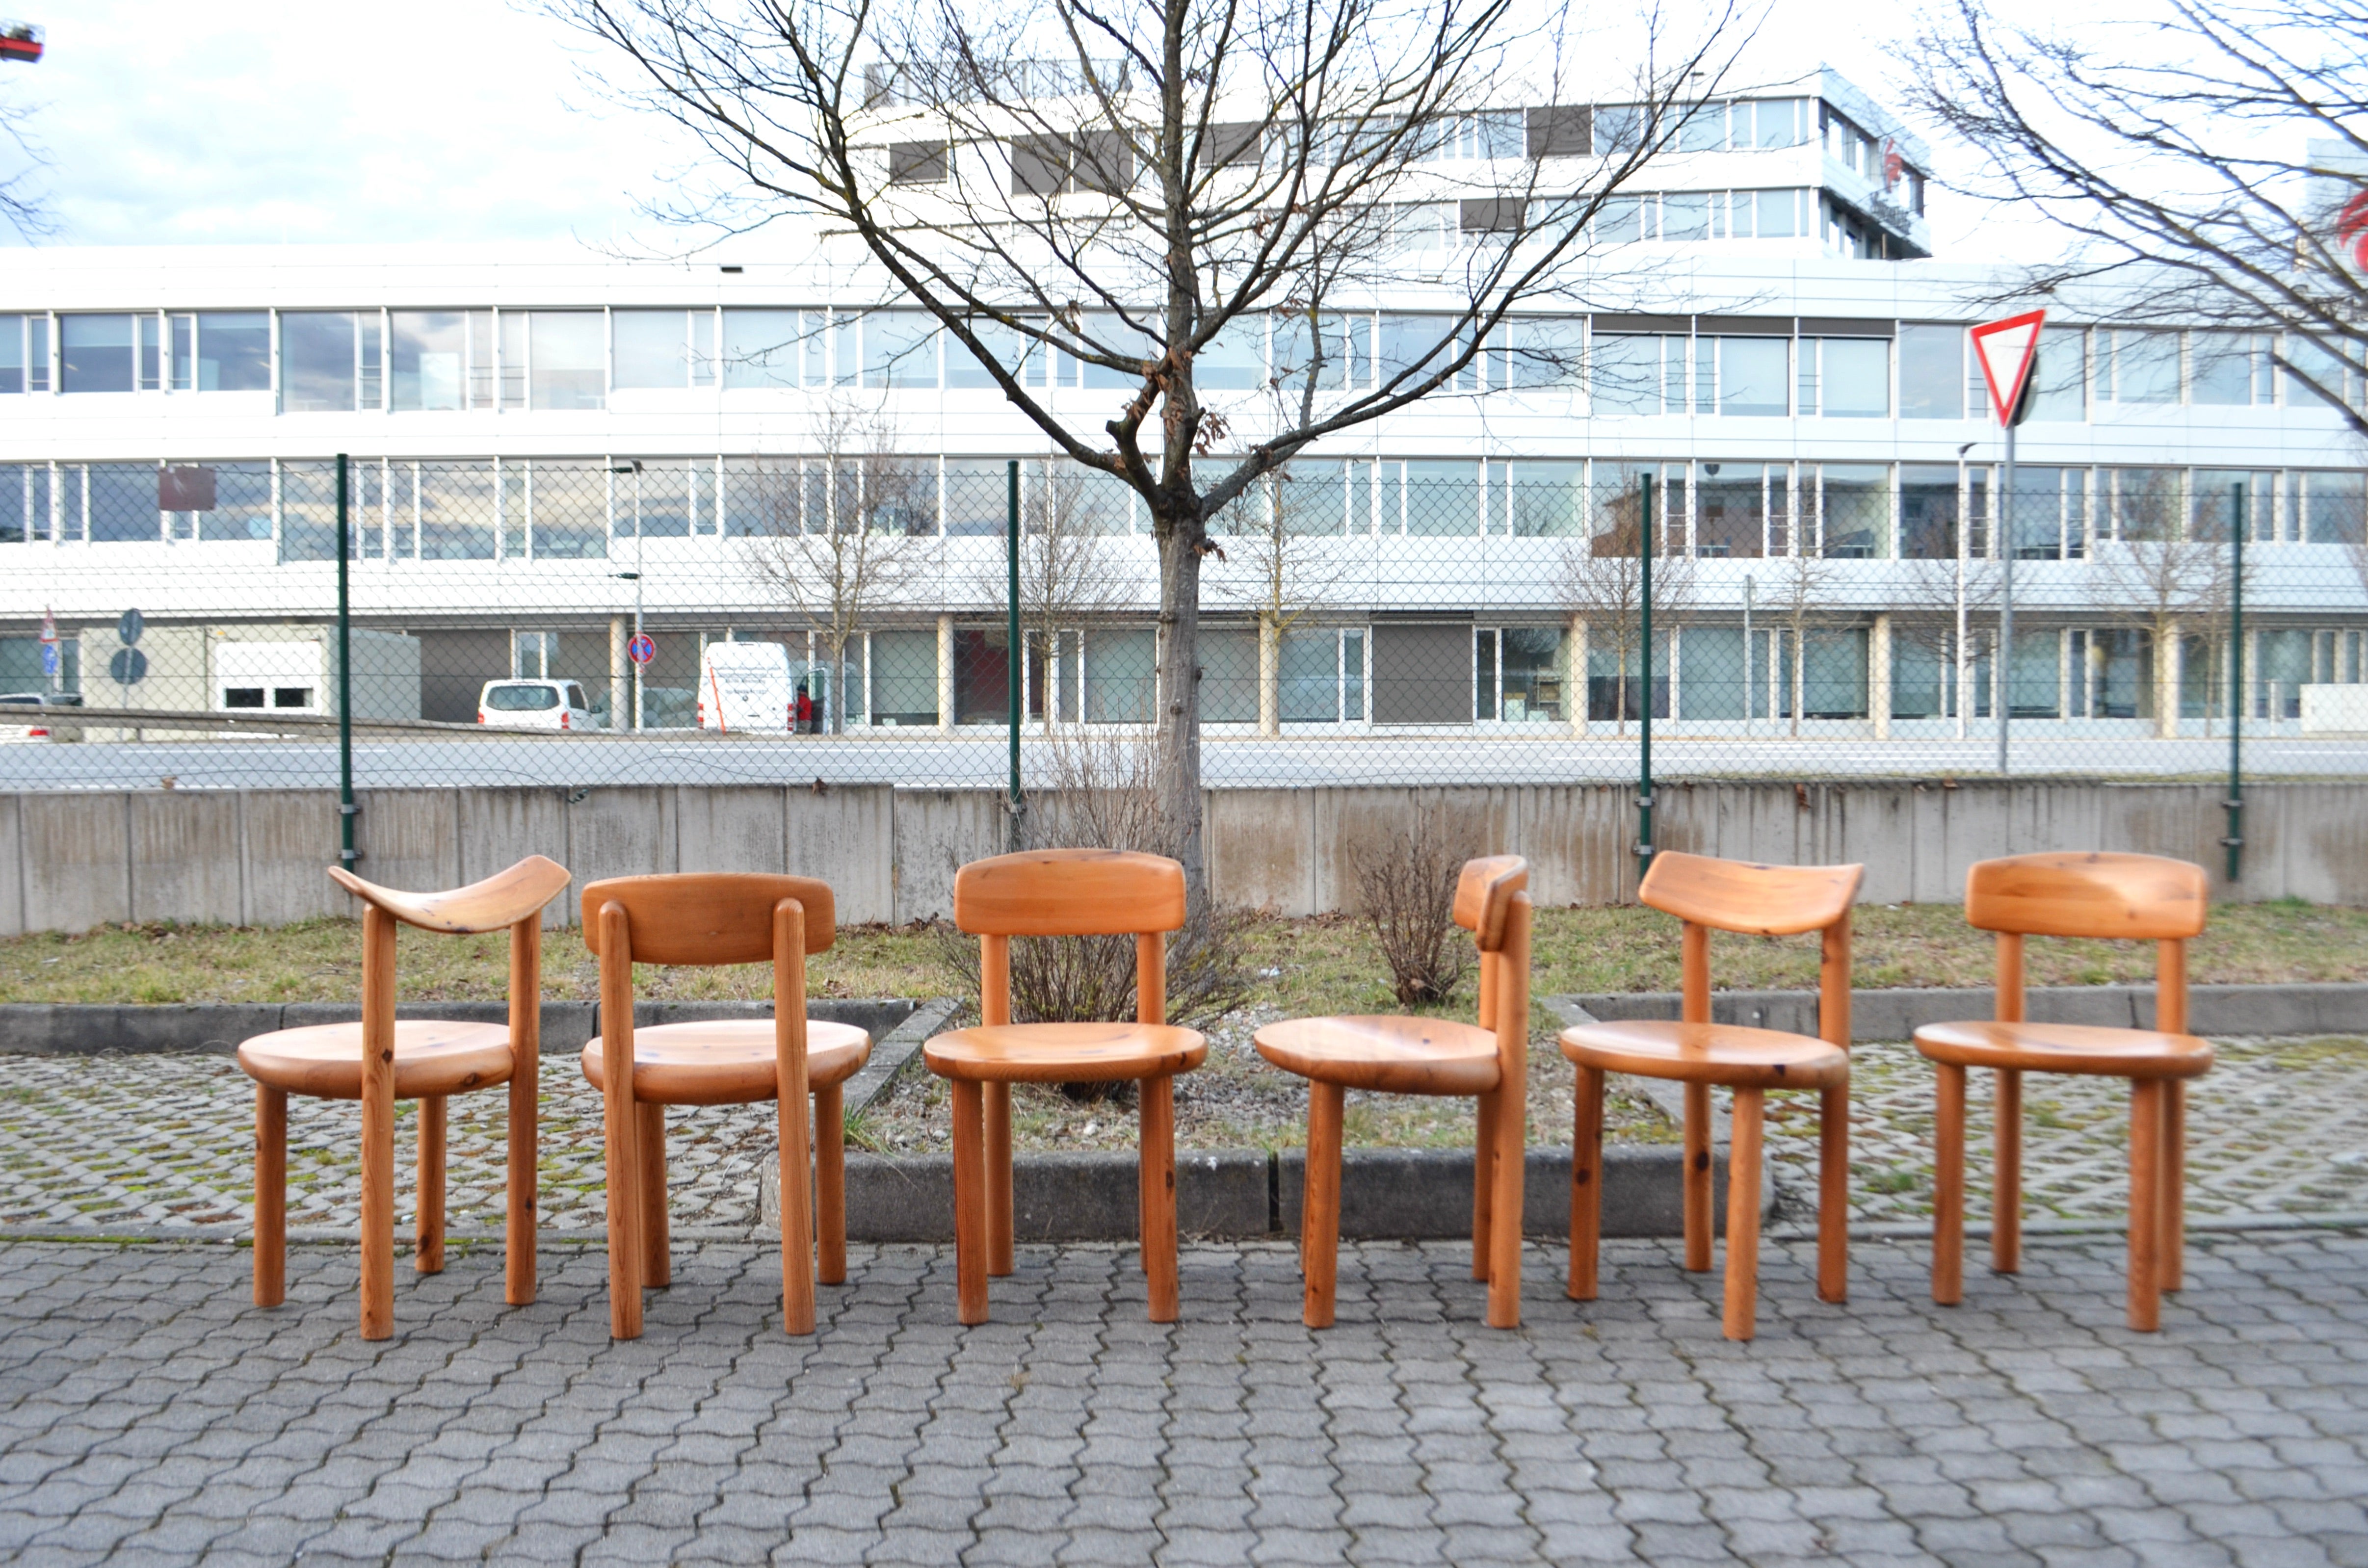 Chaises de salle à manger conçues par Rainer Daumiller et fabriquées par Hirtshals Savvaerk.
Modèle avec dos flexible.
Bois massif de pin scandinave.
La version est laquée.
Ces chaises sont très confortables.
La surface d'assise est parfaitement